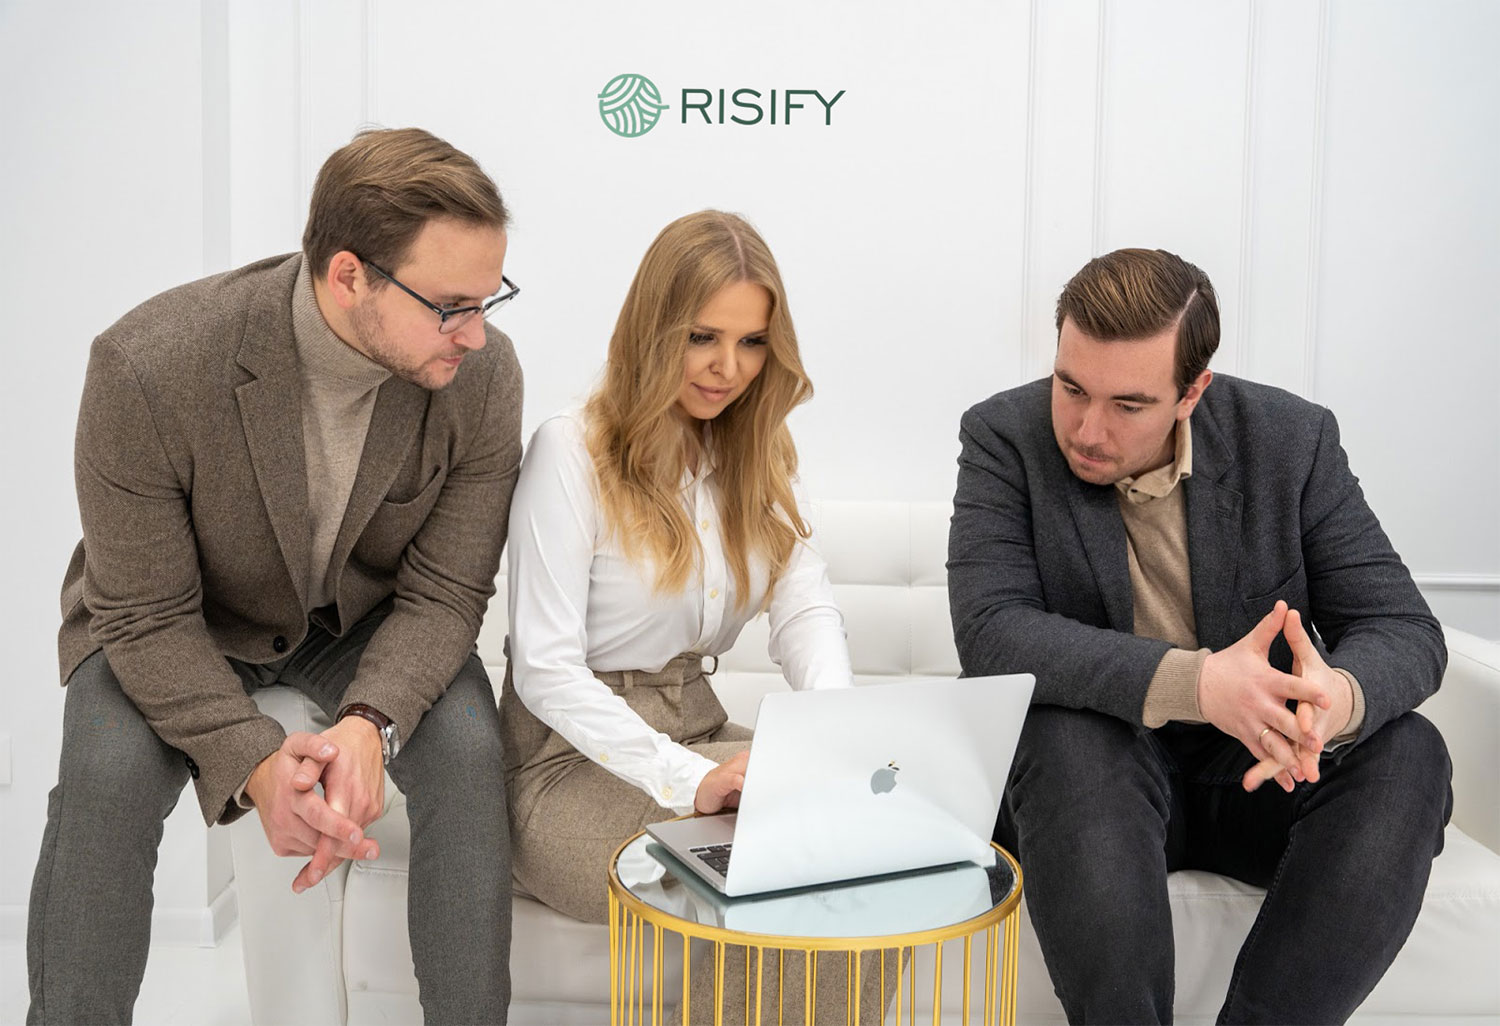 Rozpocznij pracę jako psychoterapeuta w Risify | Risify.pl